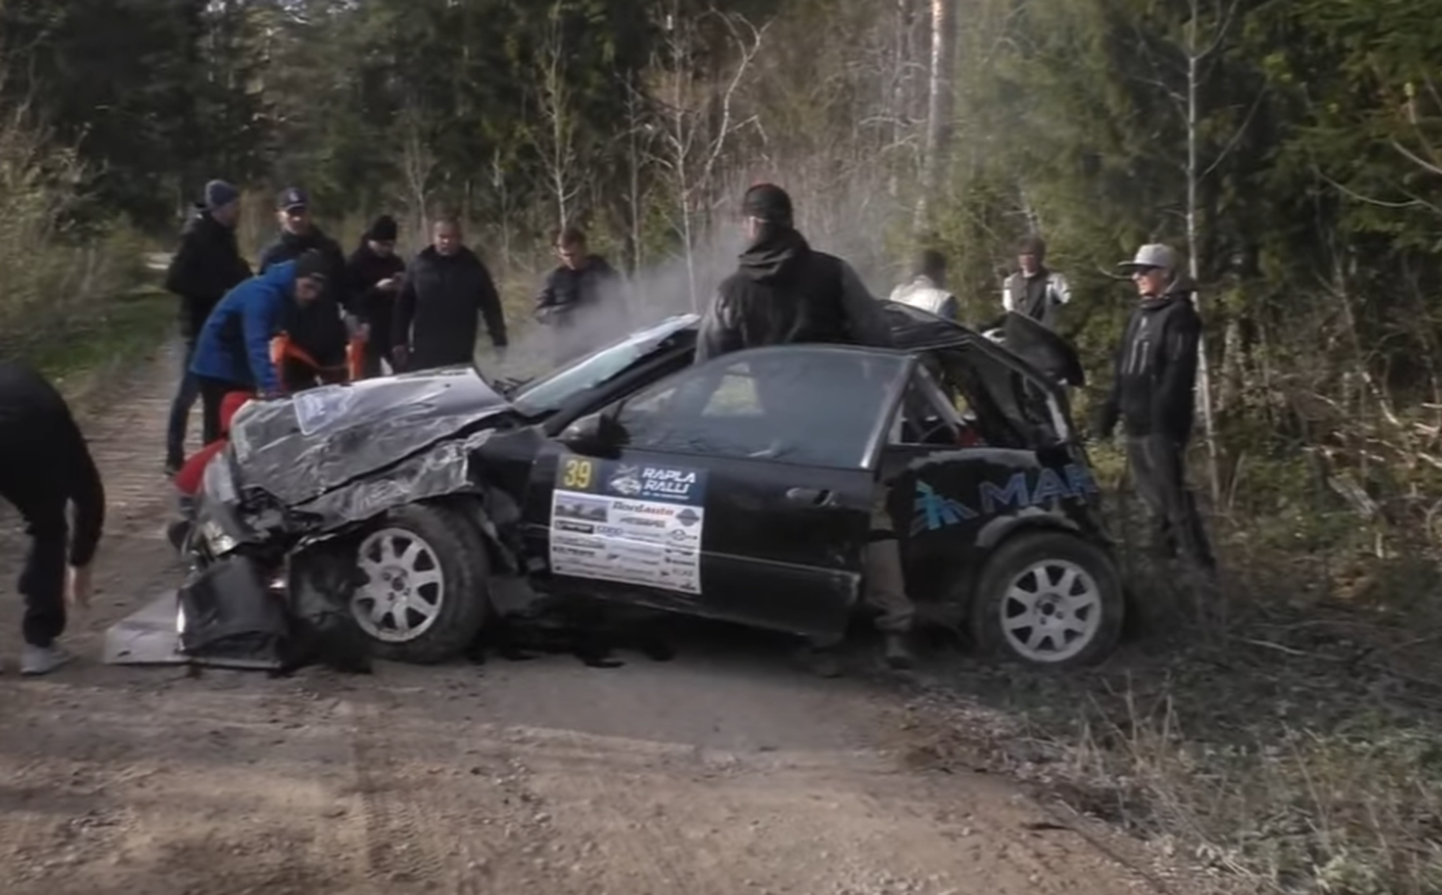 Kristofer ja Risto Märtsoni auto pärast avariid.